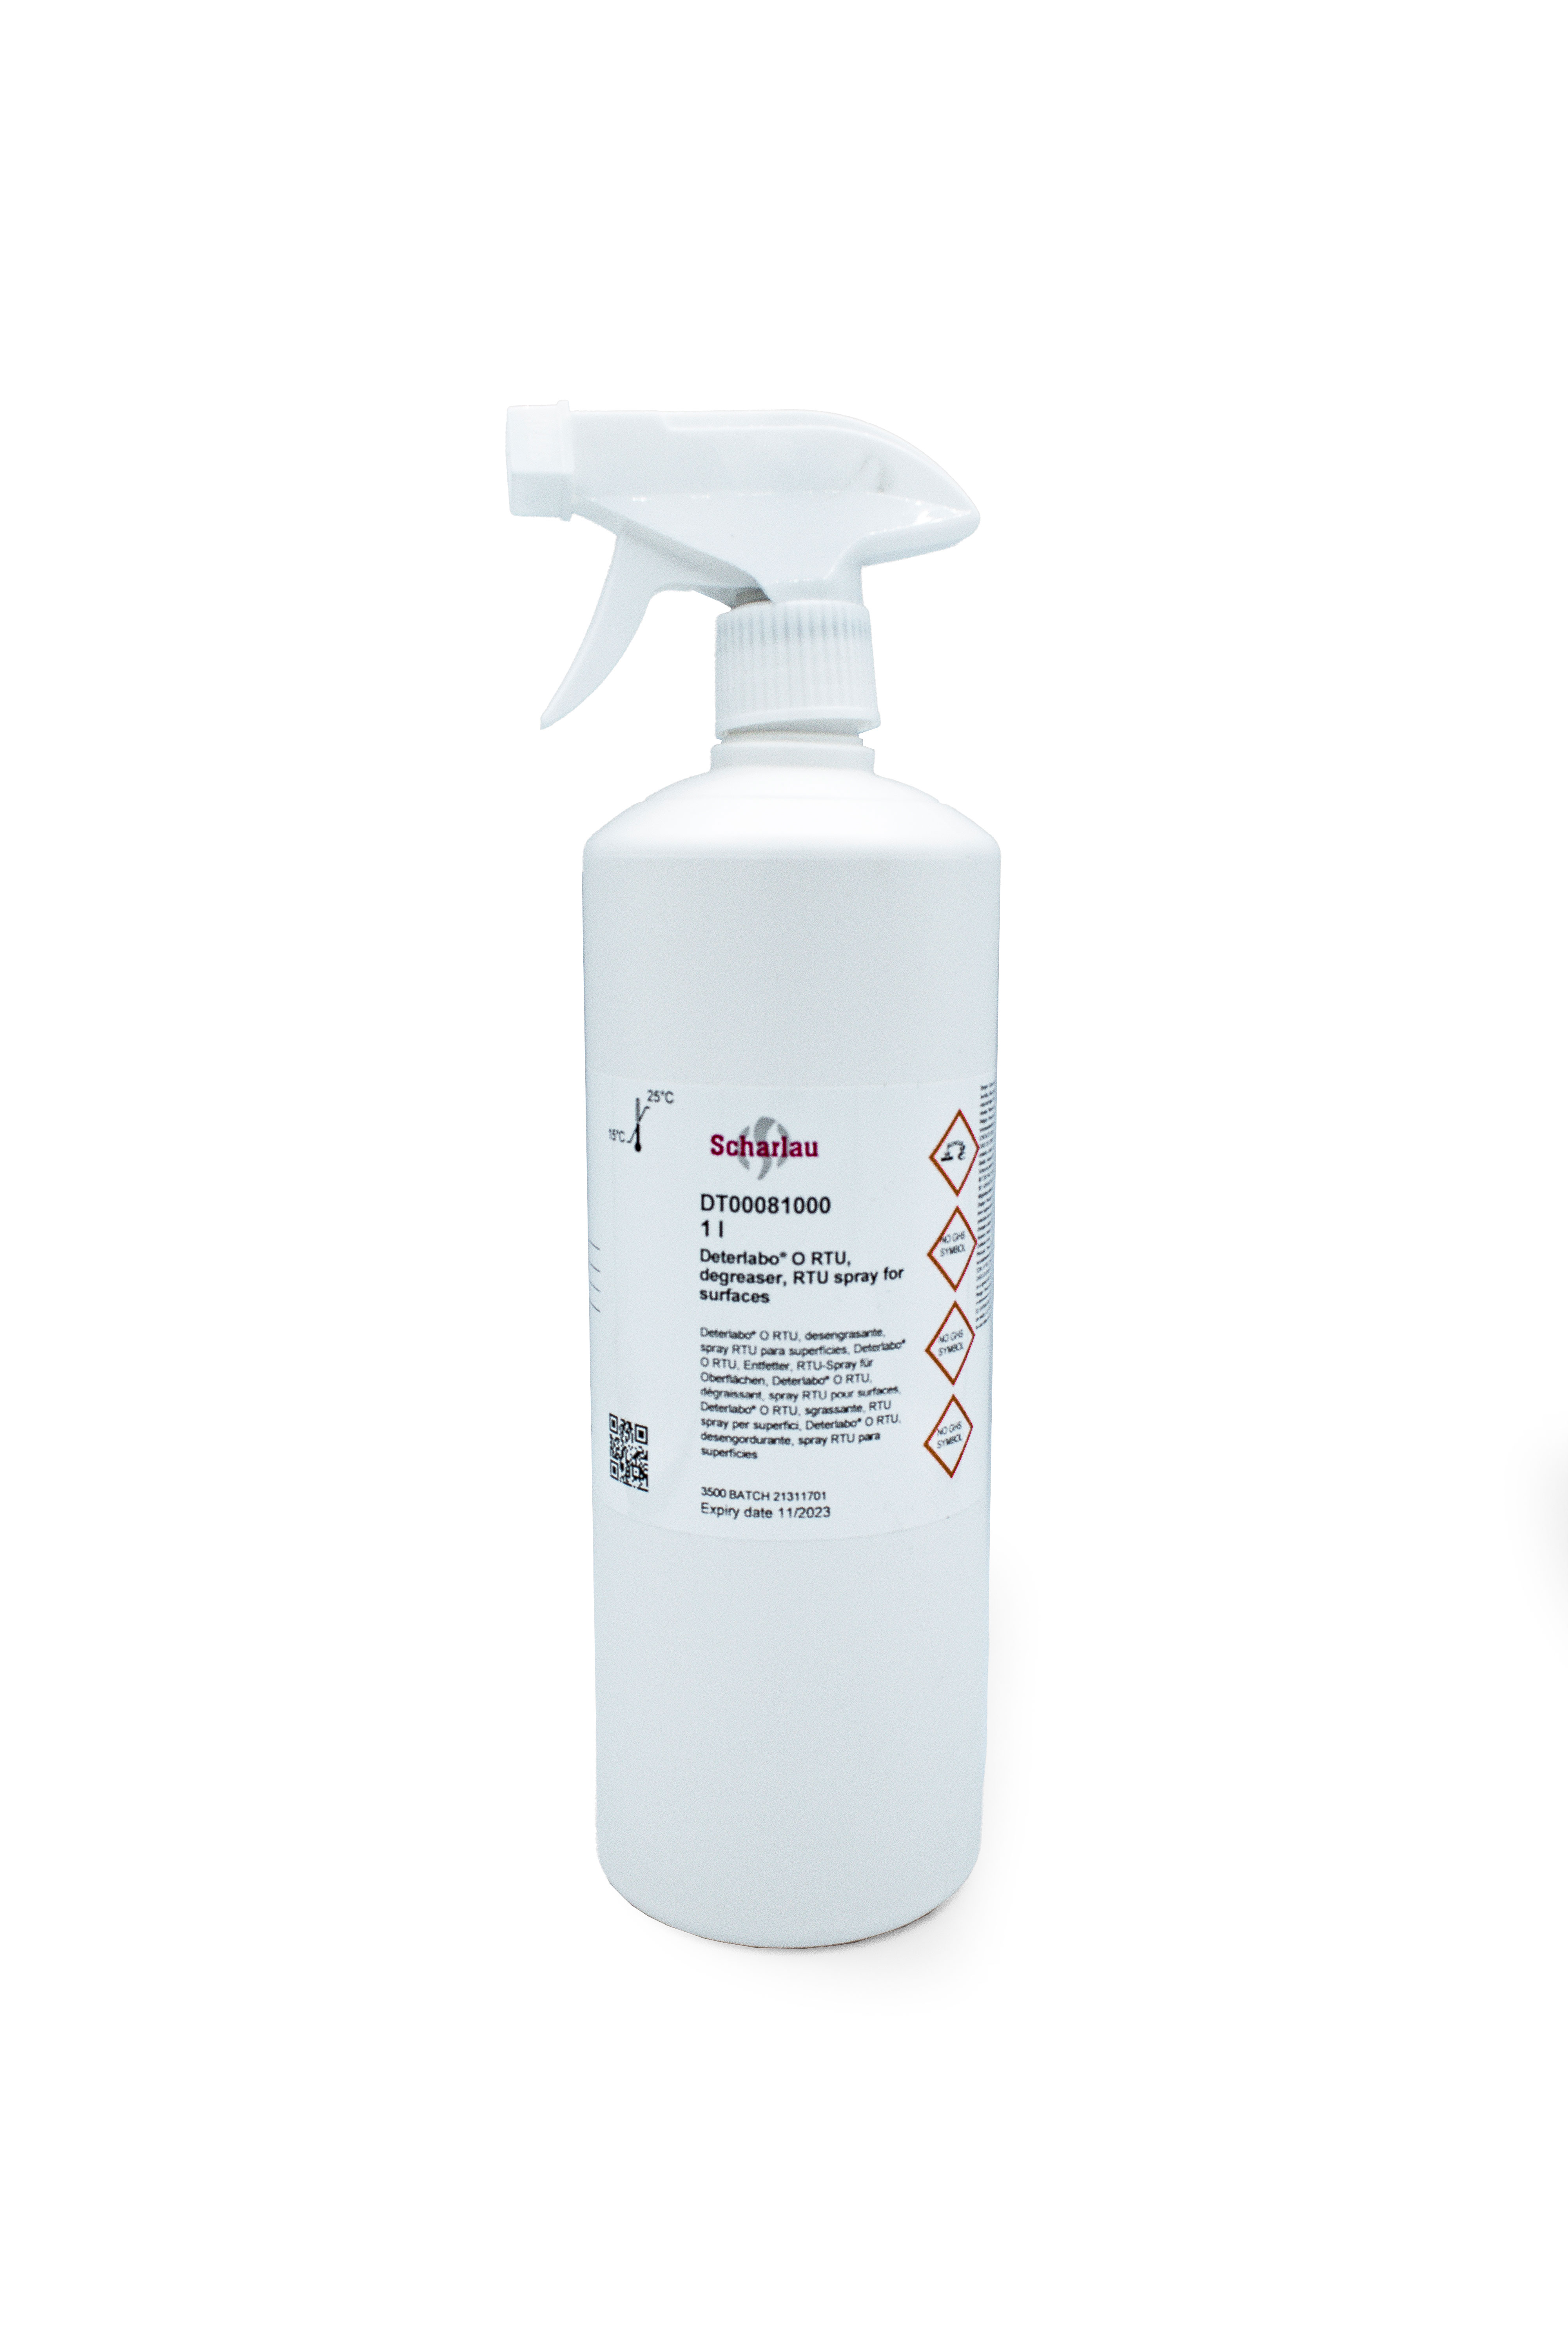 Degreaser, RTU spray for surfaces, Deterlabo® O RTU